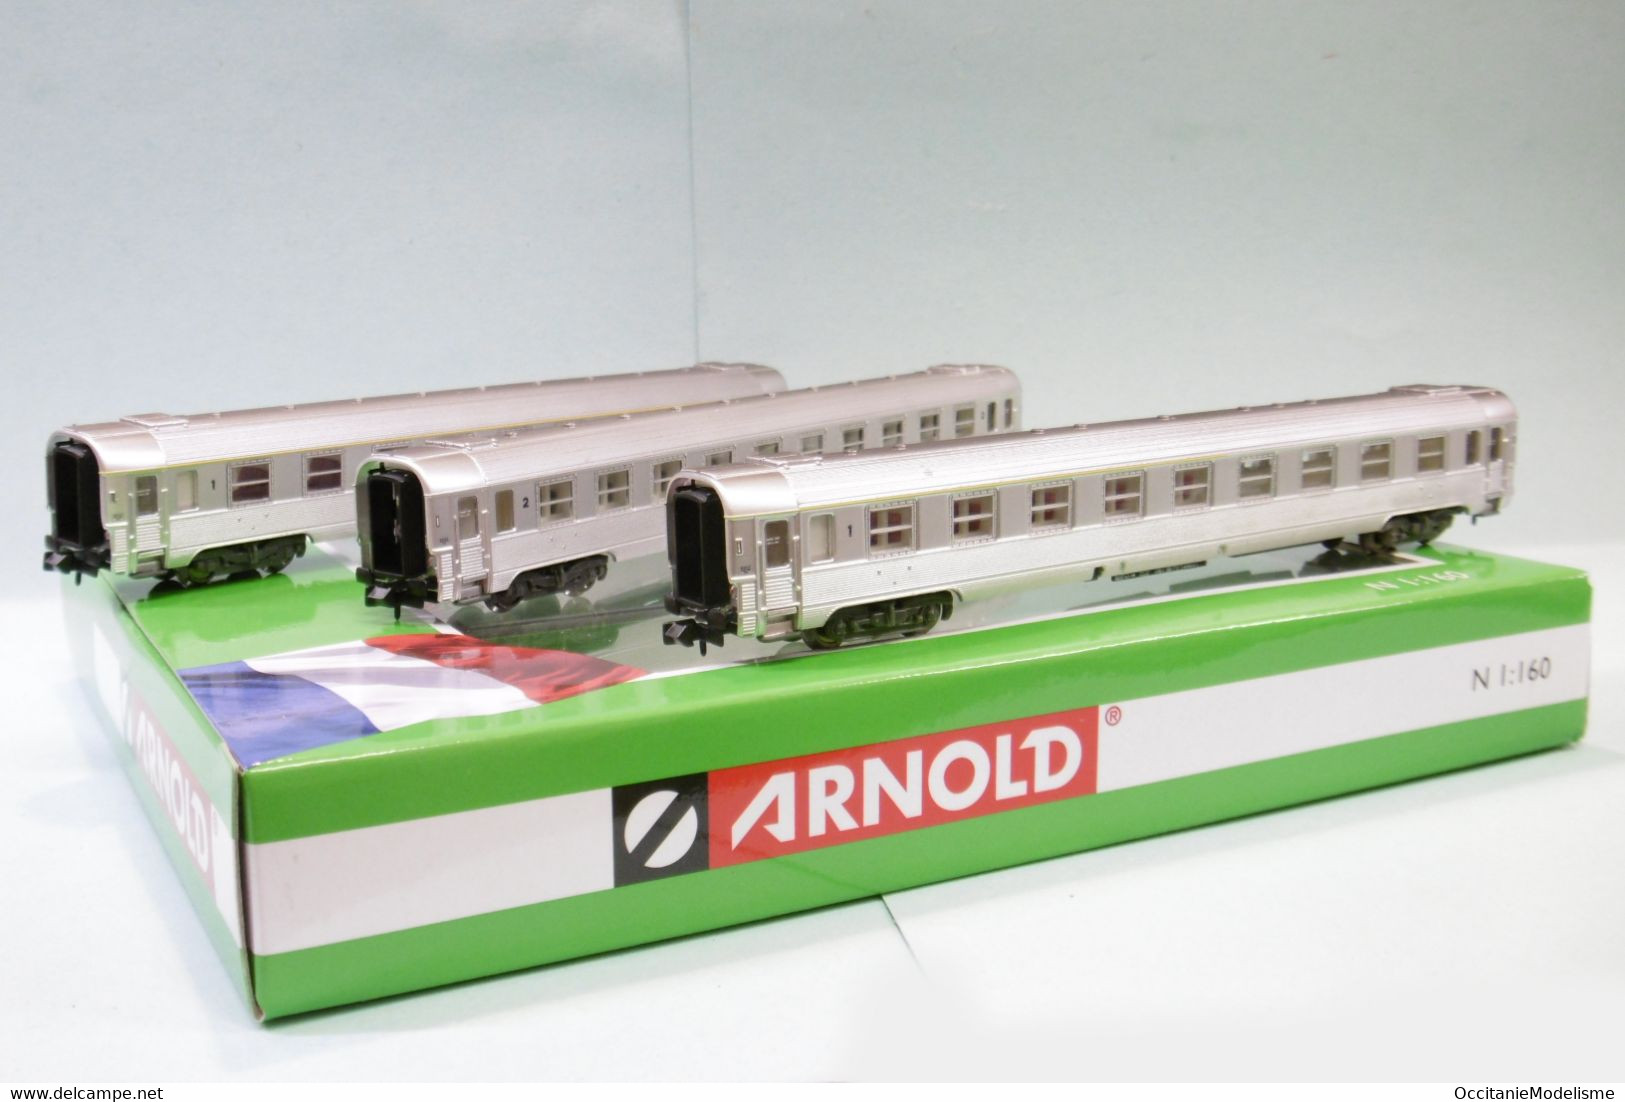 Arnold Modelo HN4324.